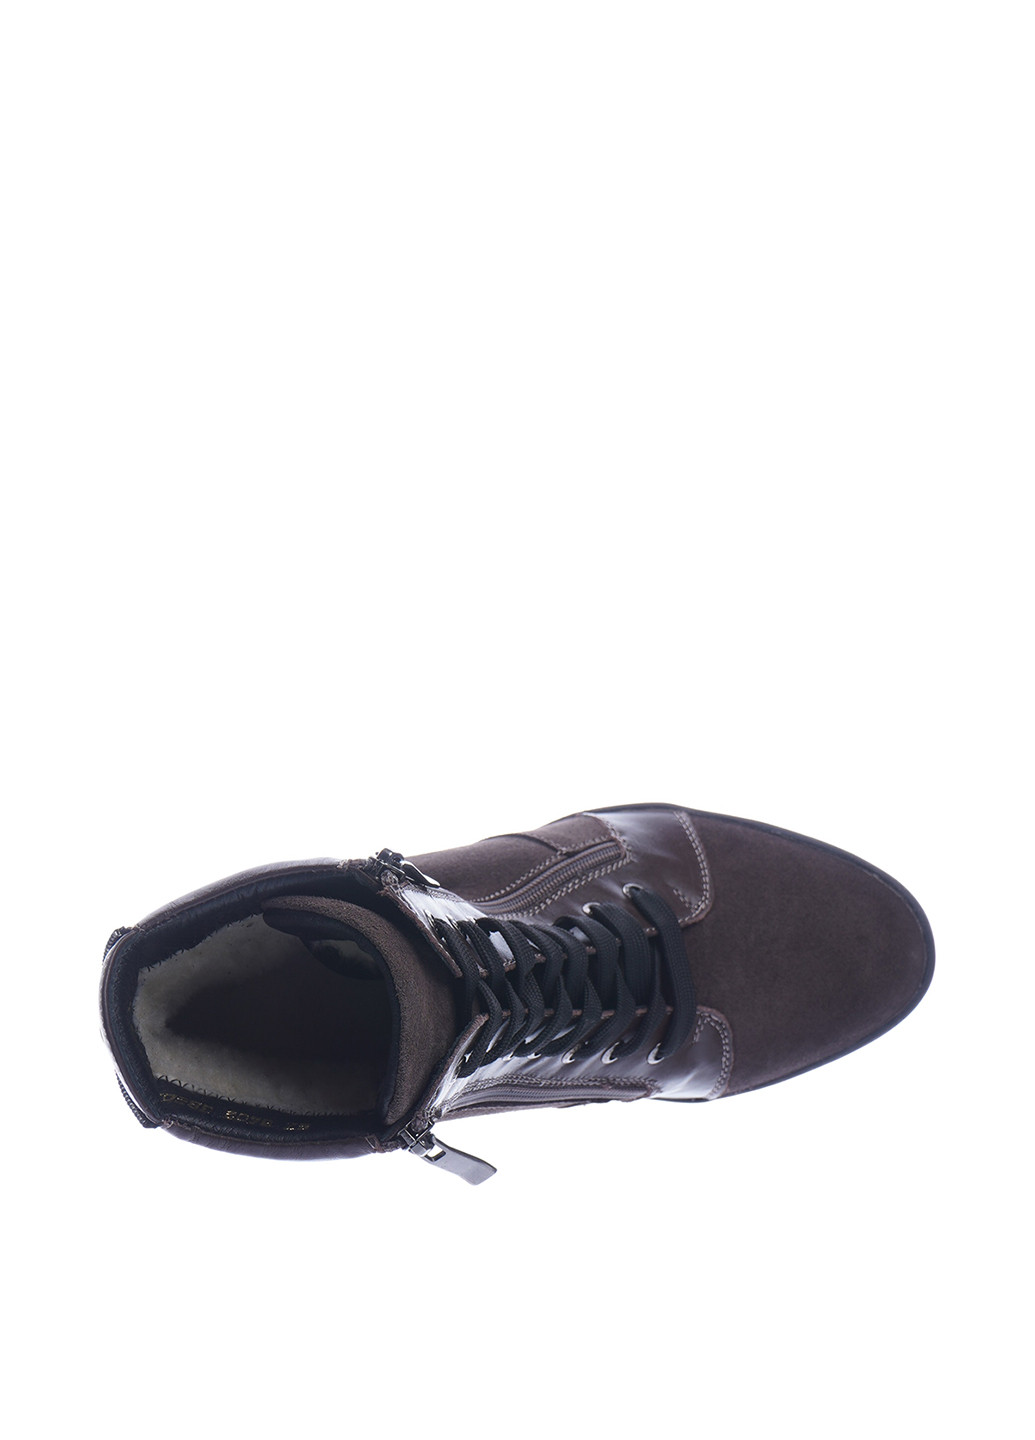 Осенние ботинки сникерсы Avis со шнуровкой из натуральной замши